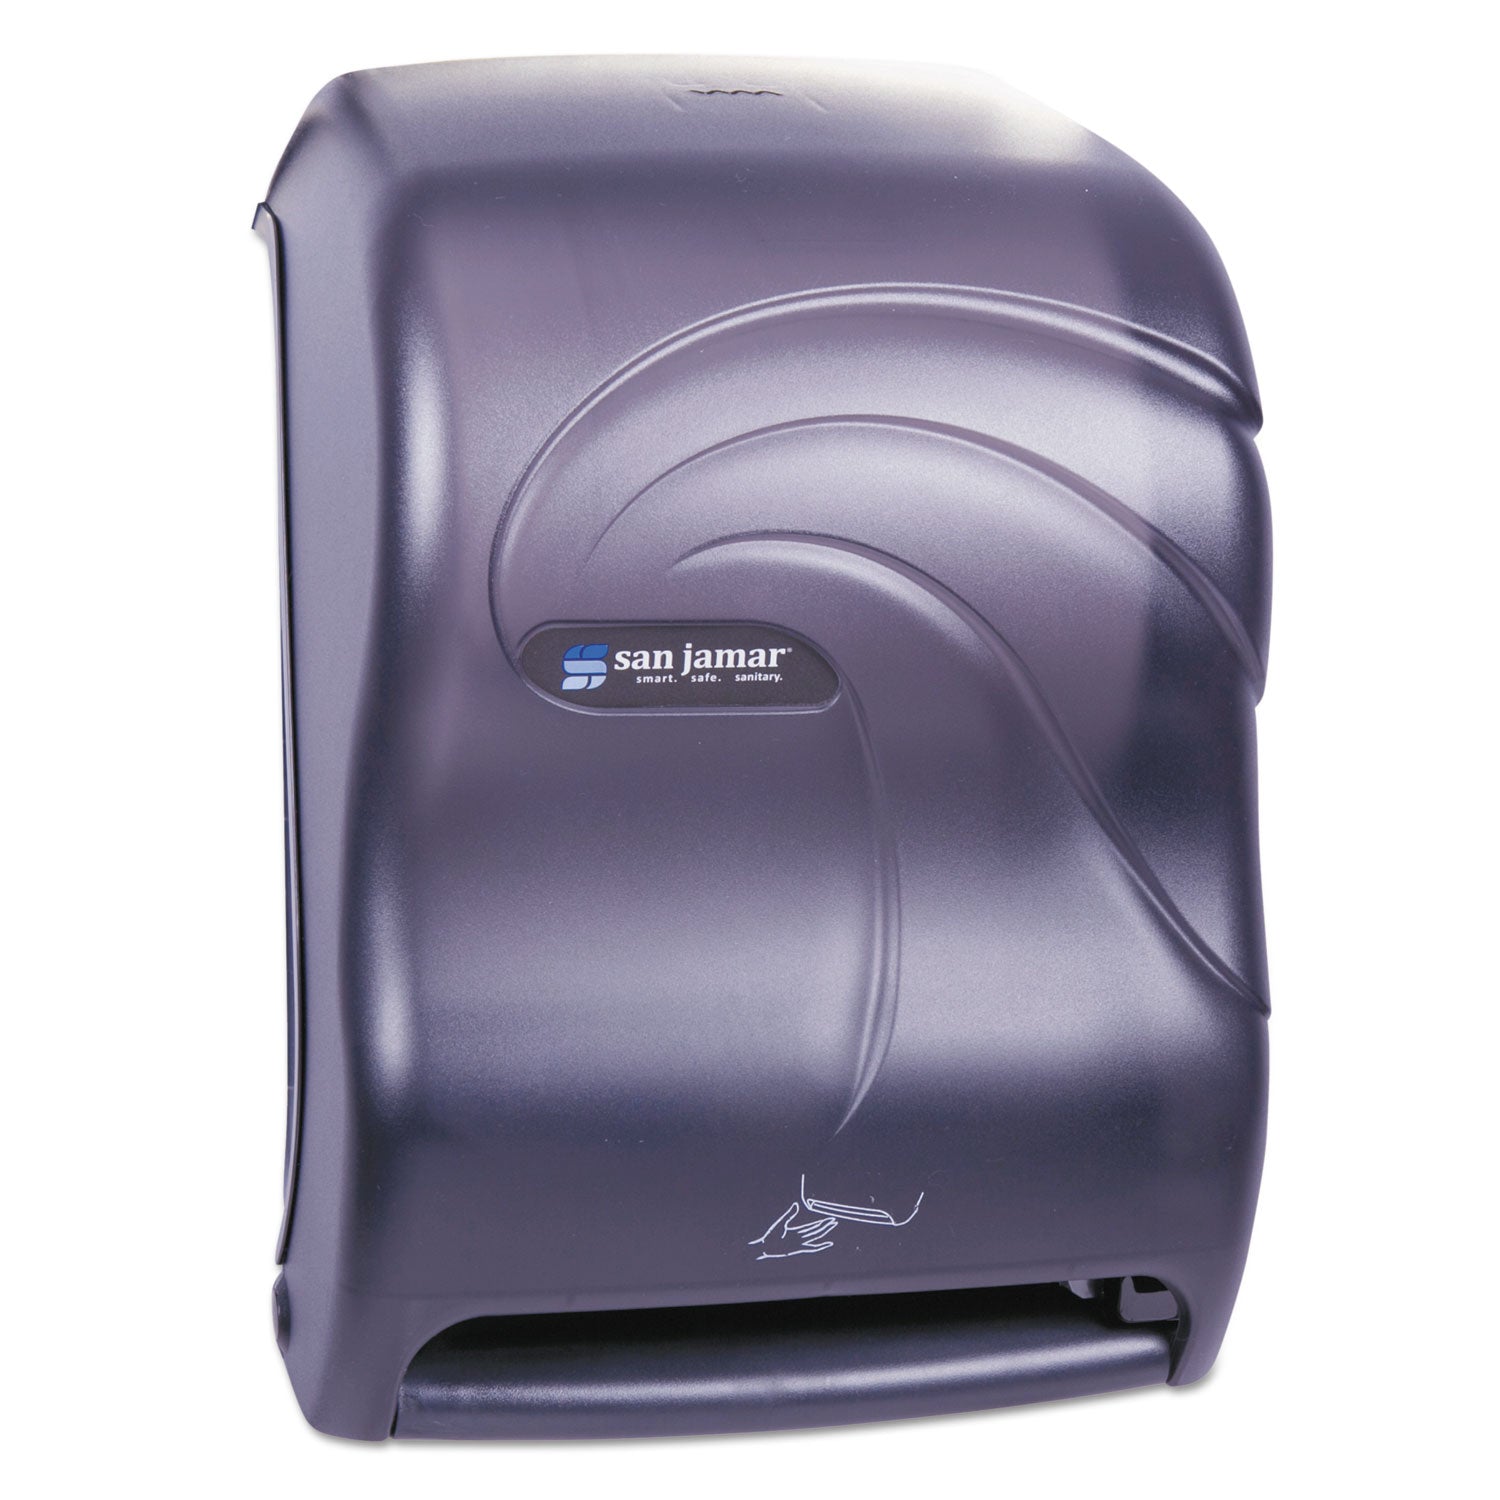 San Jamar Smart System With Iq Sensor Towel Dispenser, 11 3/4X9 1/4X16 1/2, Black Pearl - SJMT1490TBK